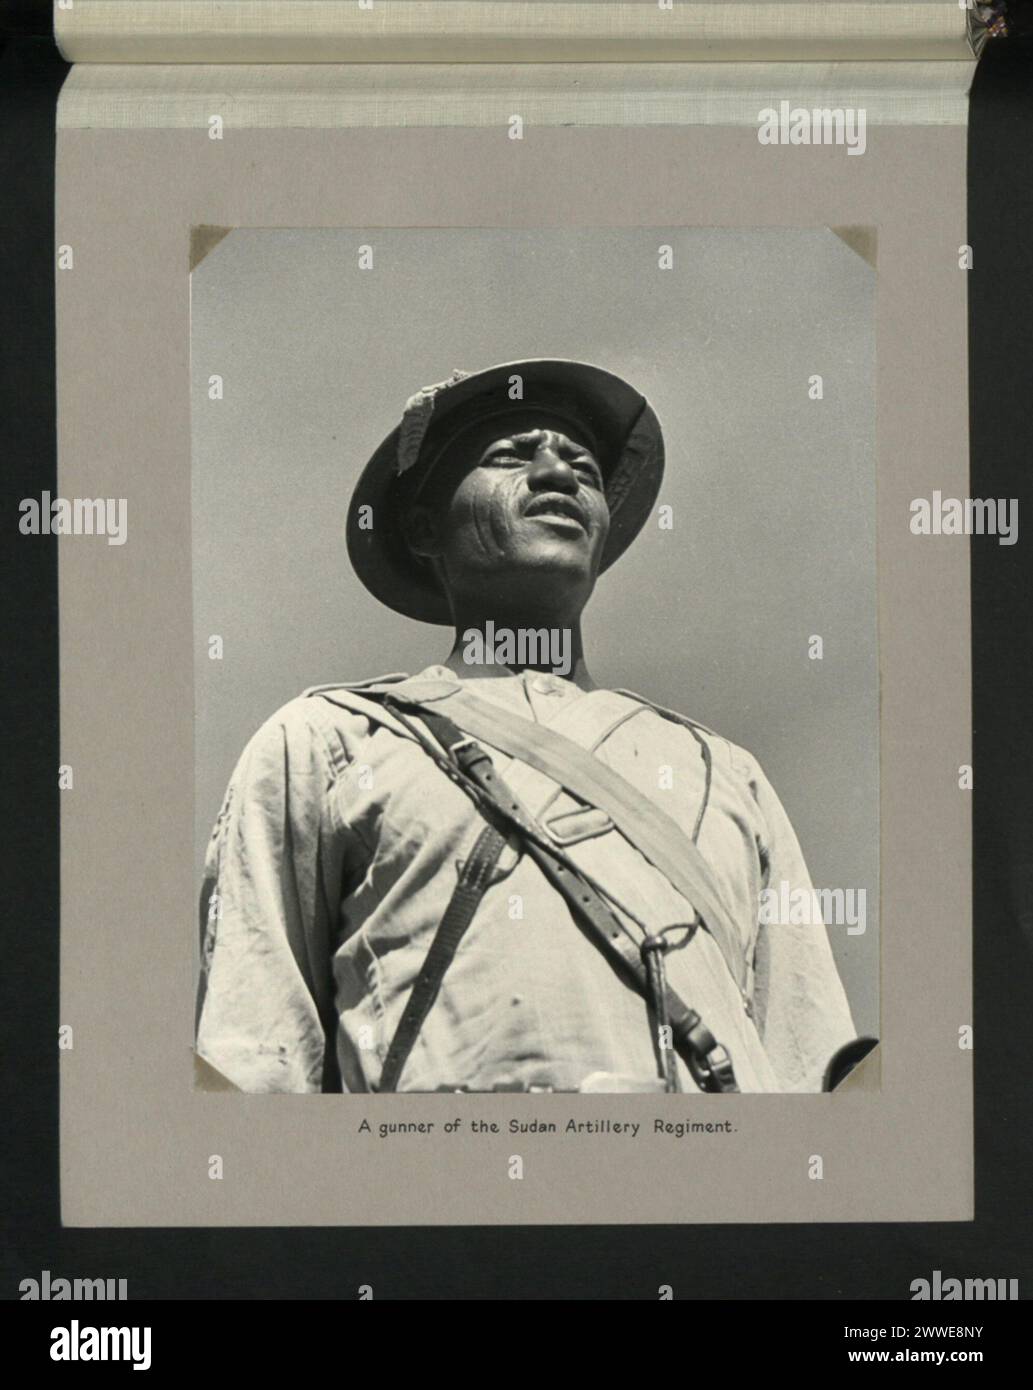 Descrizione: Un cannoniere del Sudan Artillery Regiment. Luogo: Sudan Data: Giugno 1964 africa Foto Stock